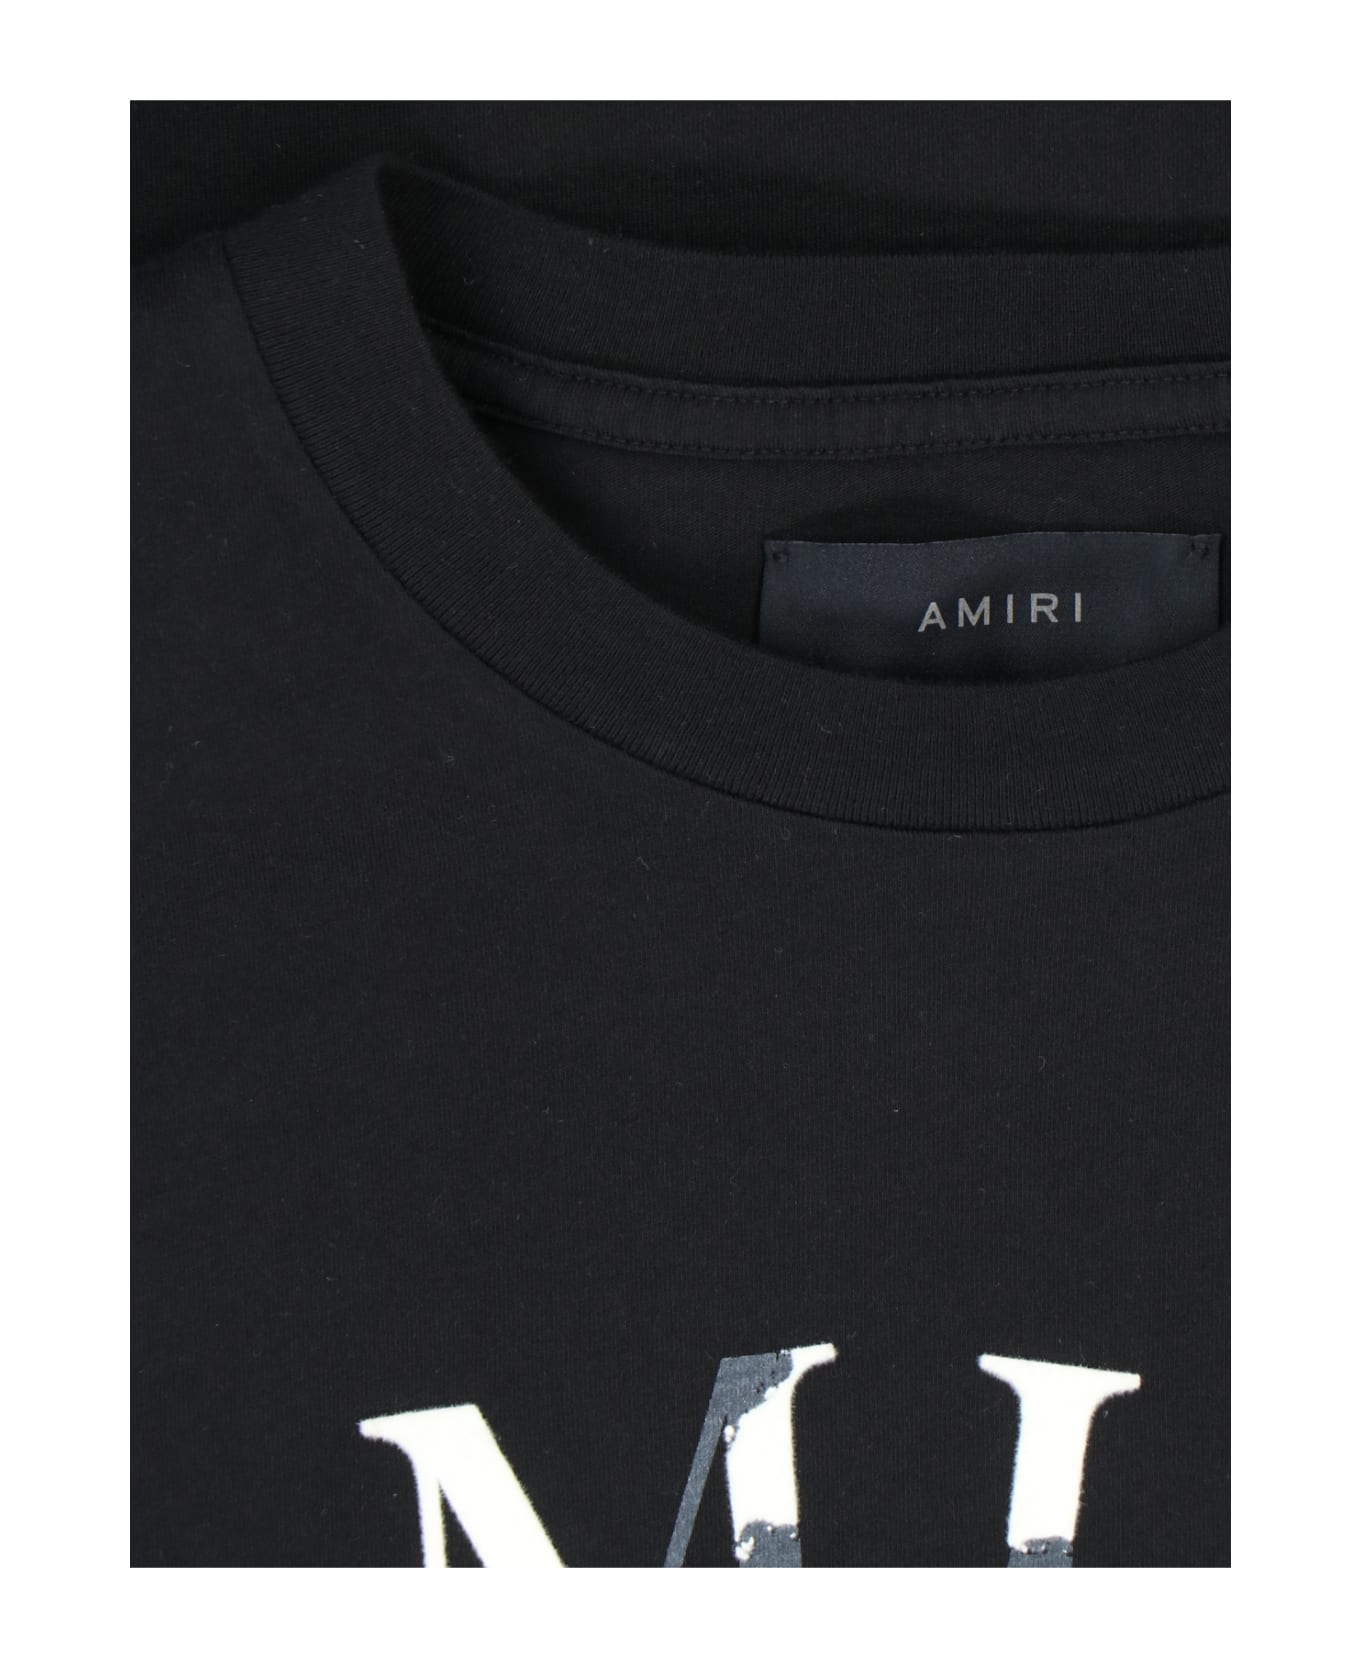 AMIRI Printed T-shirt - Black   シャツ